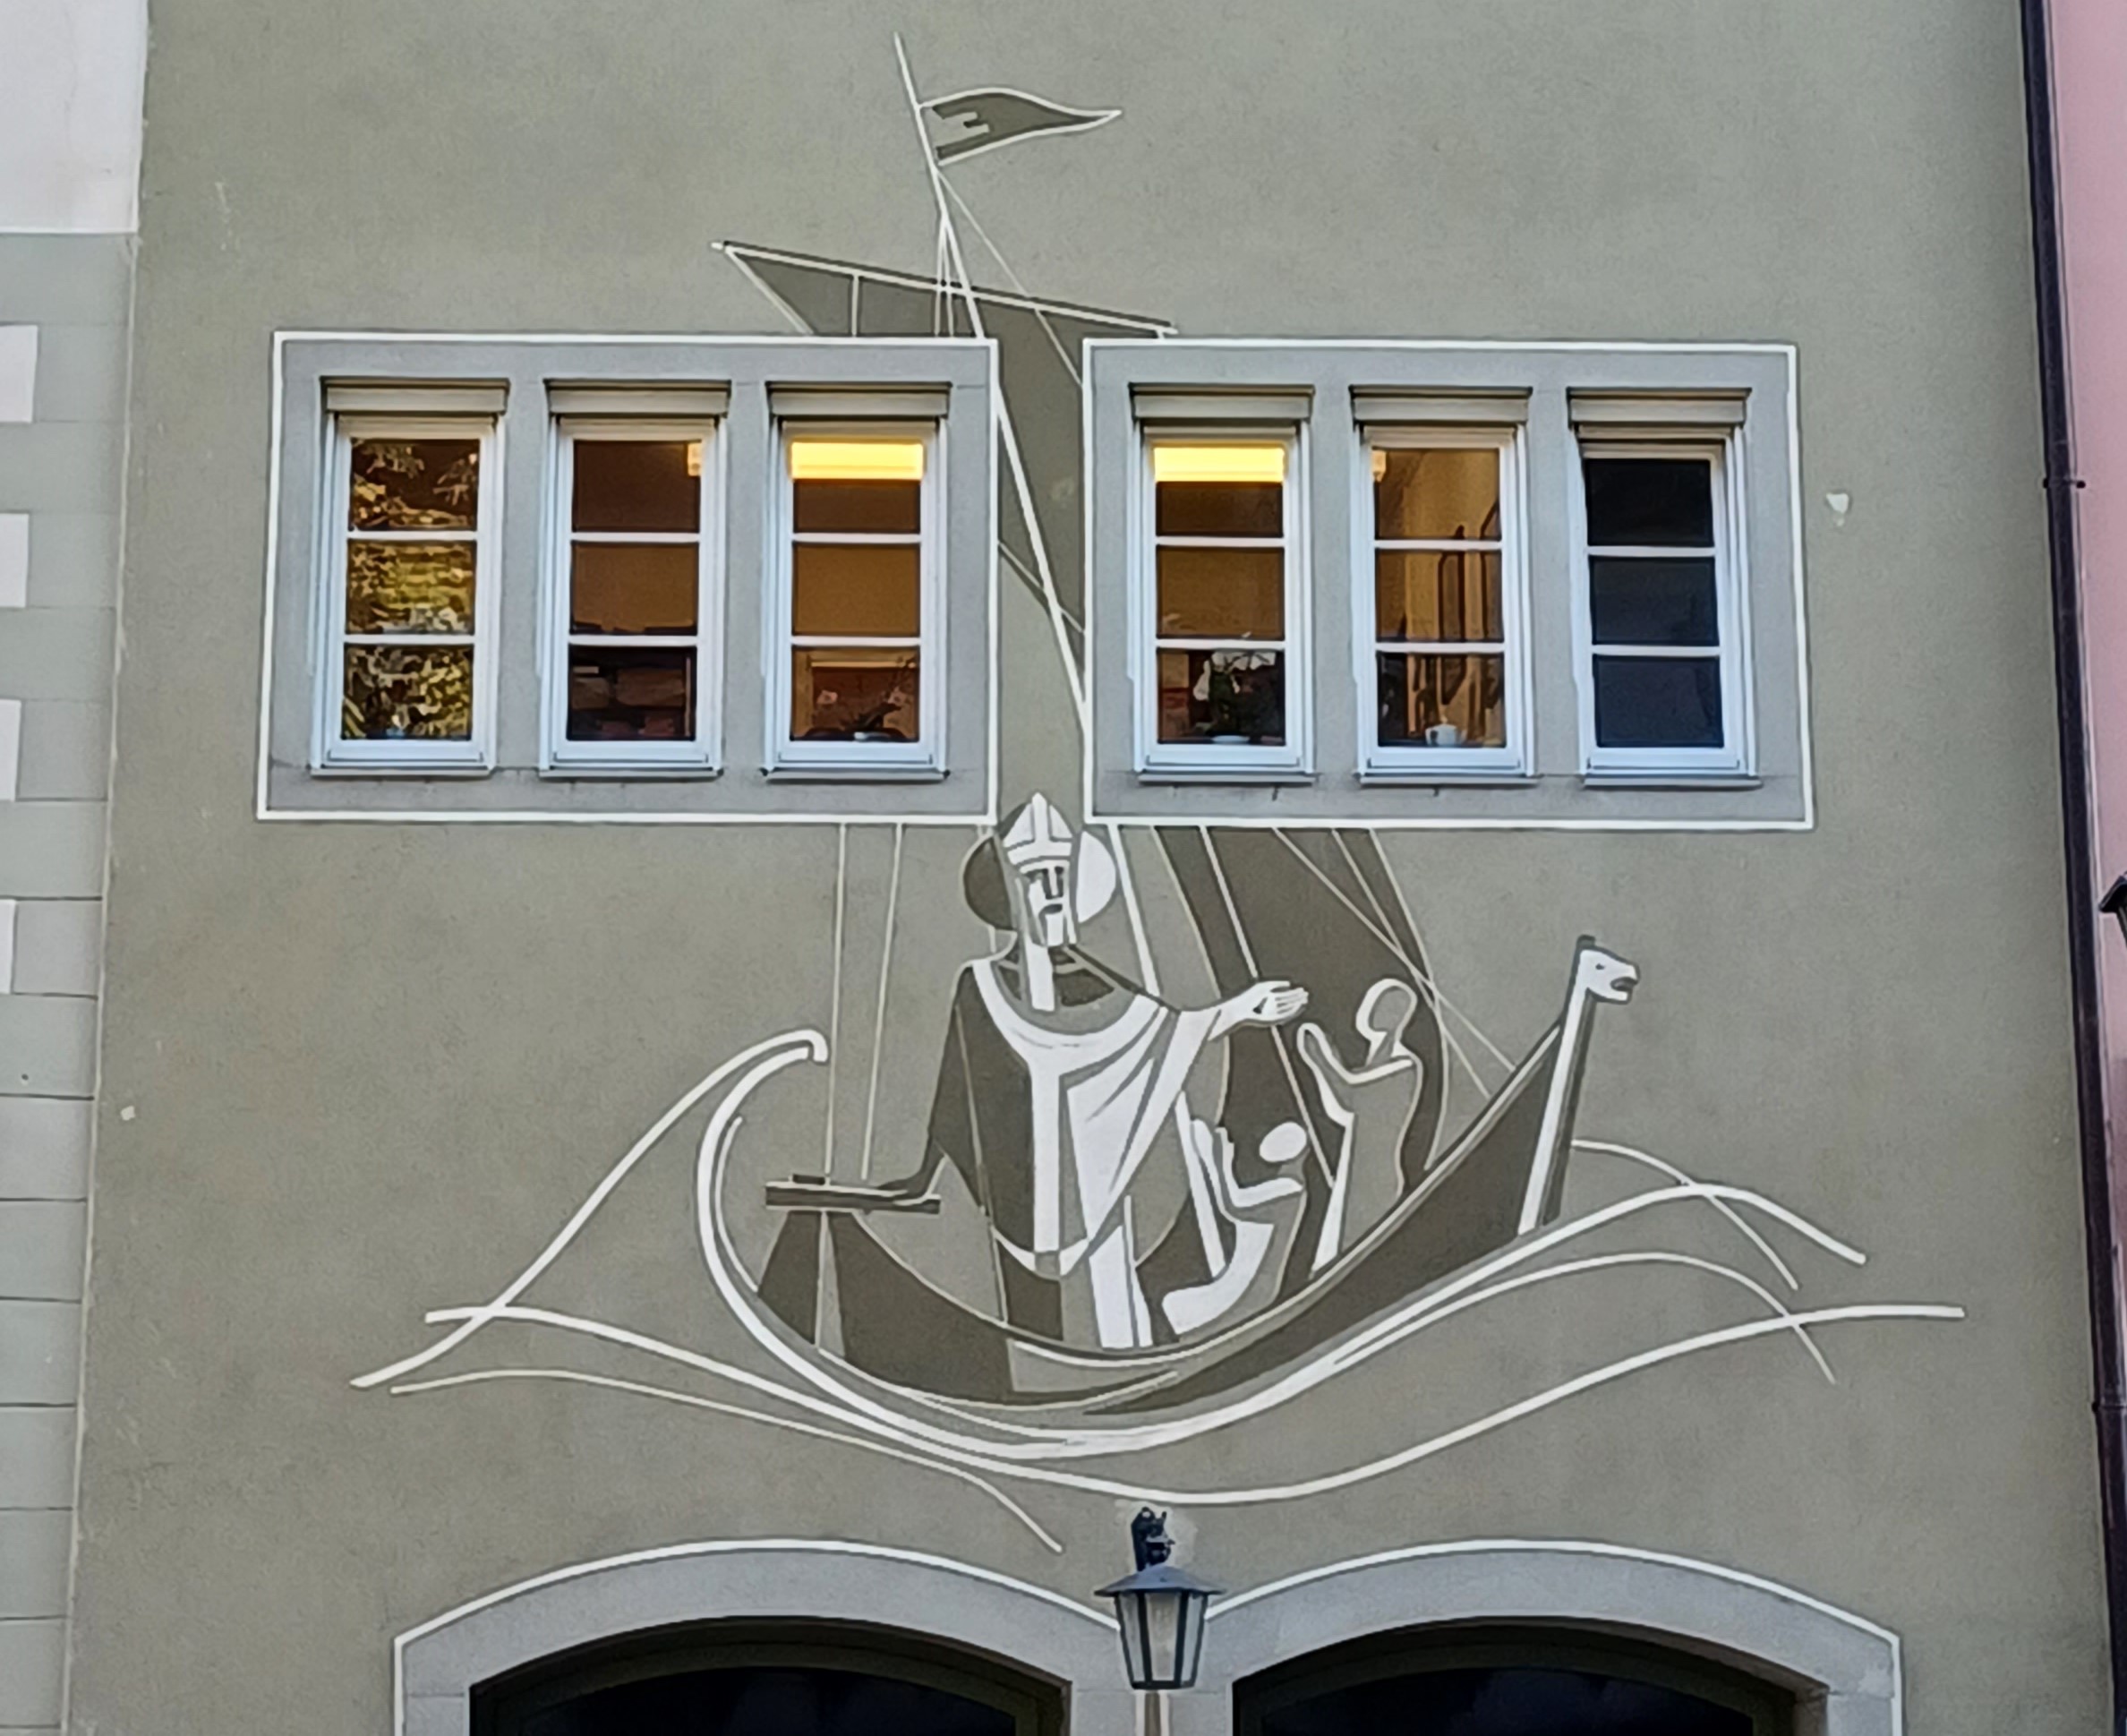 Nikolaus als Bild auf Hausfassade